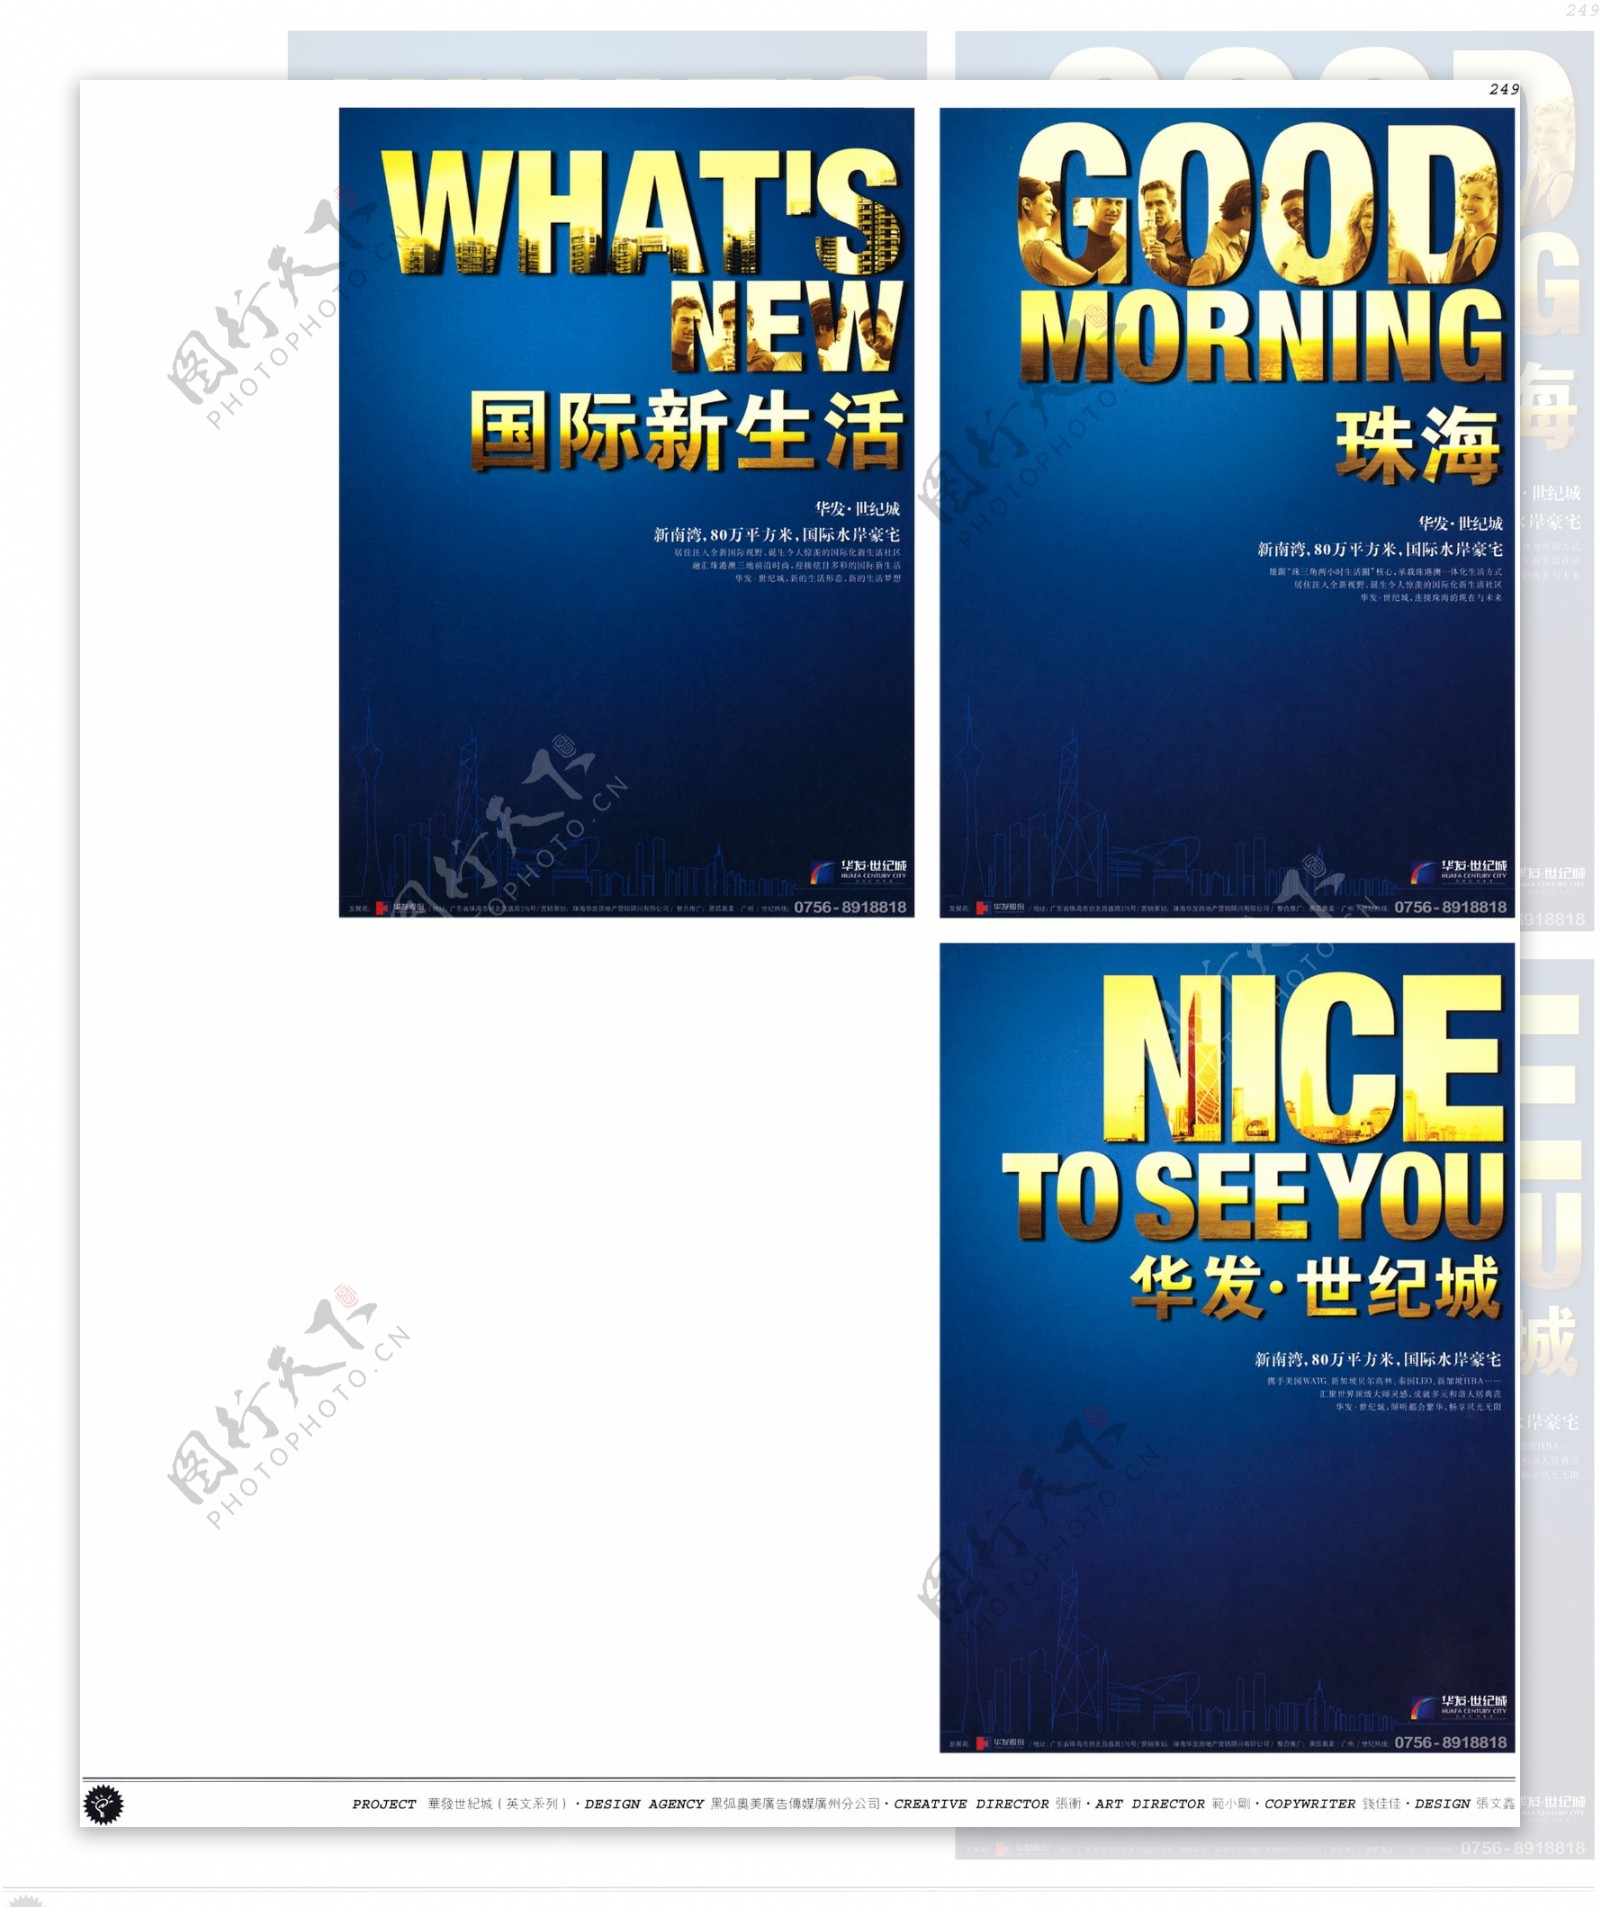 中国房地产广告年鉴第一册创意设计0237